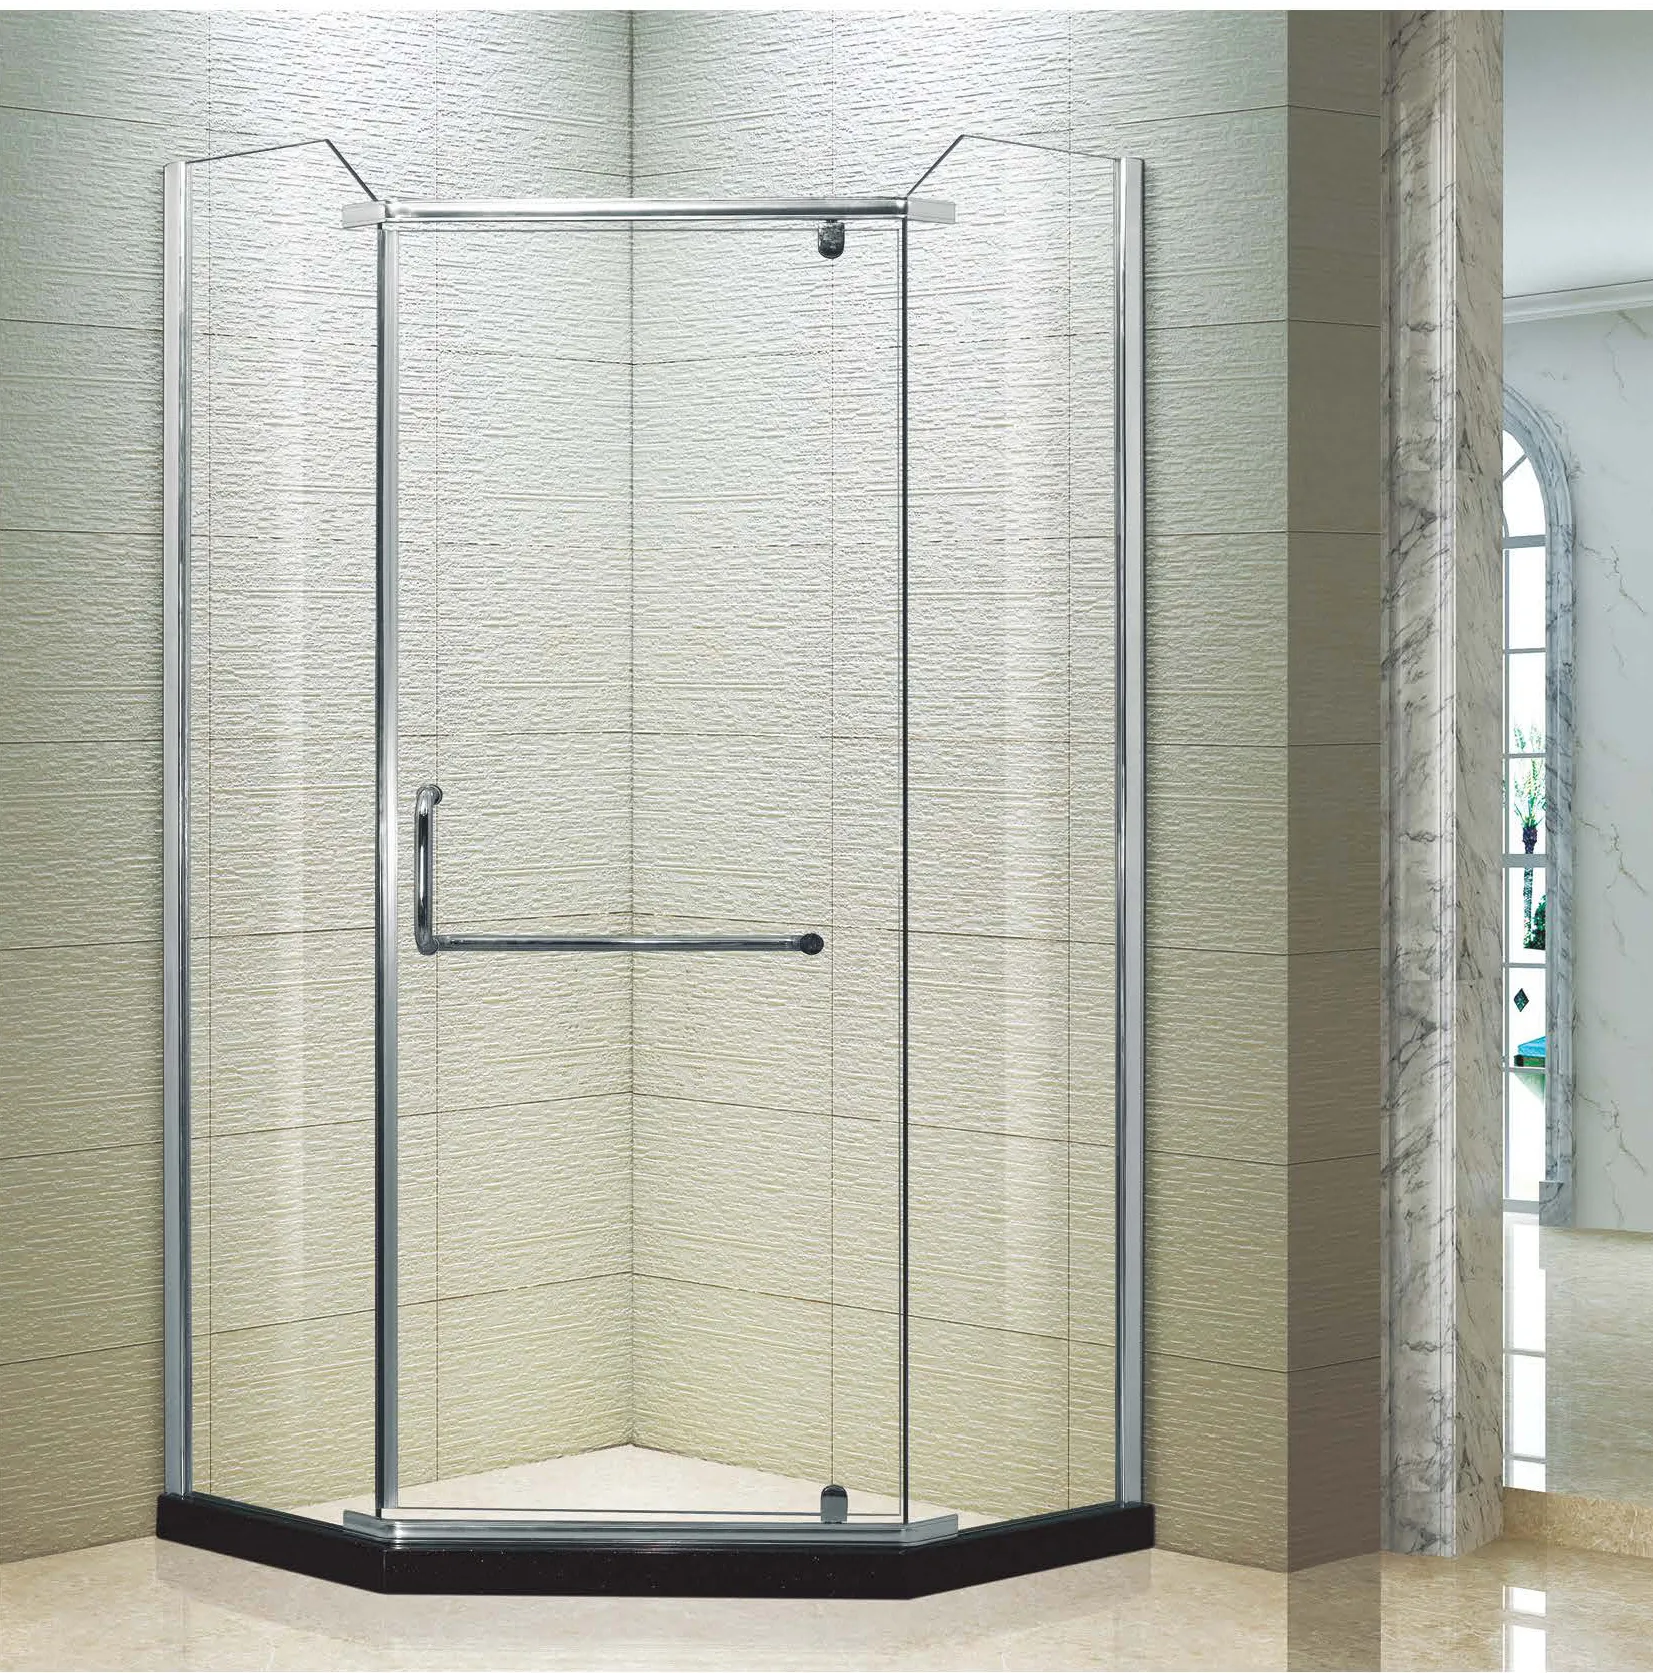 Best Selling Modern Diamond Type Frameless Shower Enclosure Tempered Glass Shower Screen Hinge Shower Room